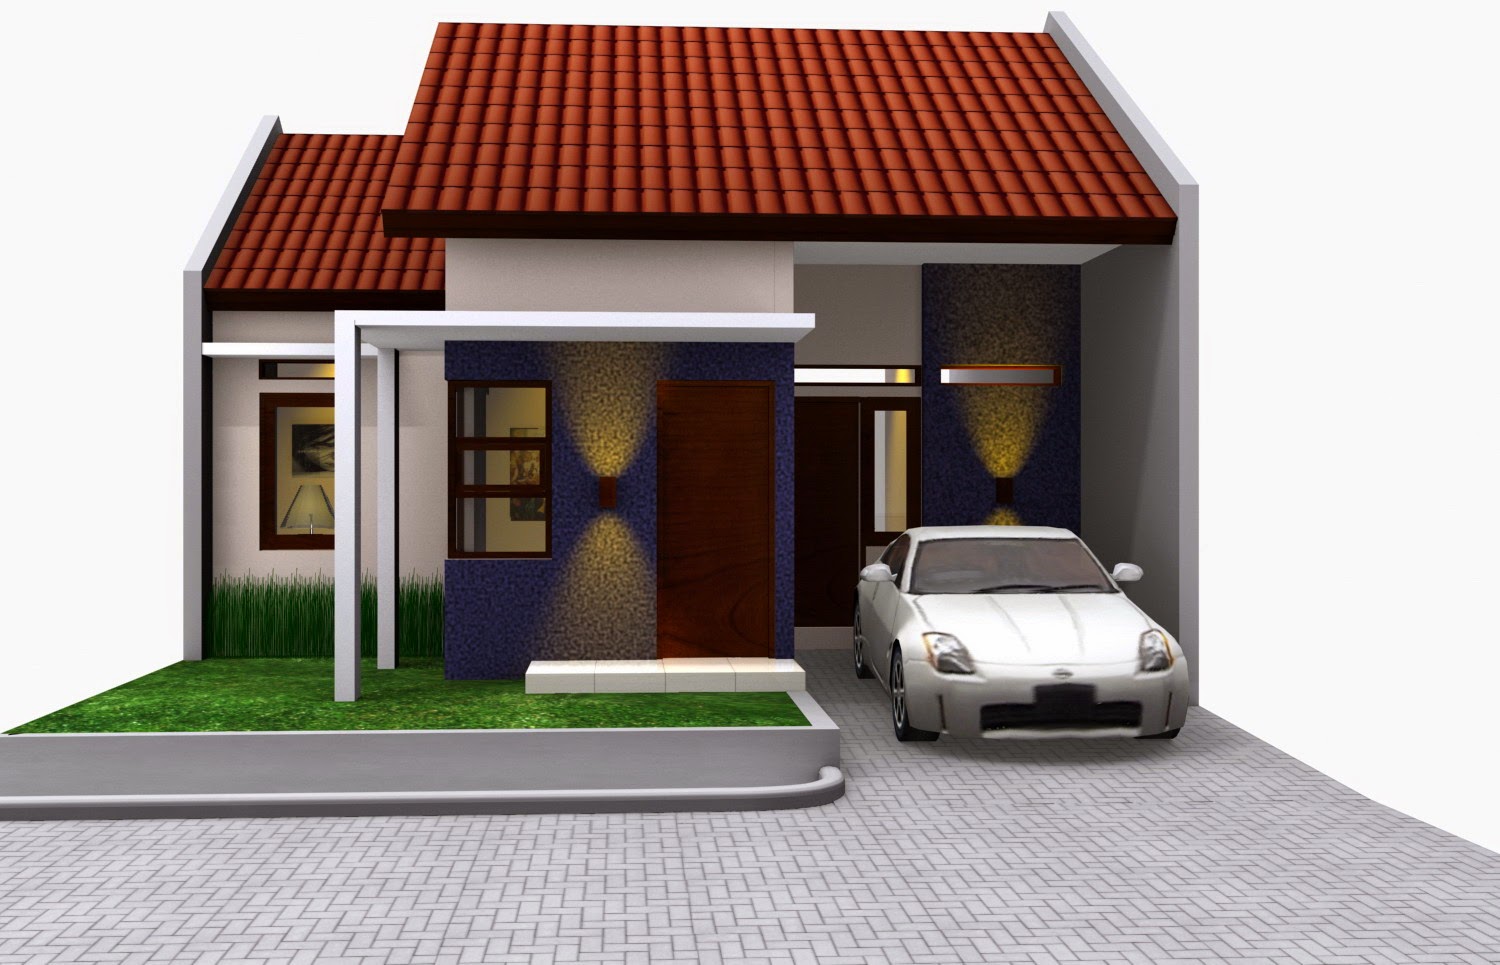 61 Desain Rumah Minimalis Yang Nyaman Desain Rumah Minimalis Terbaru